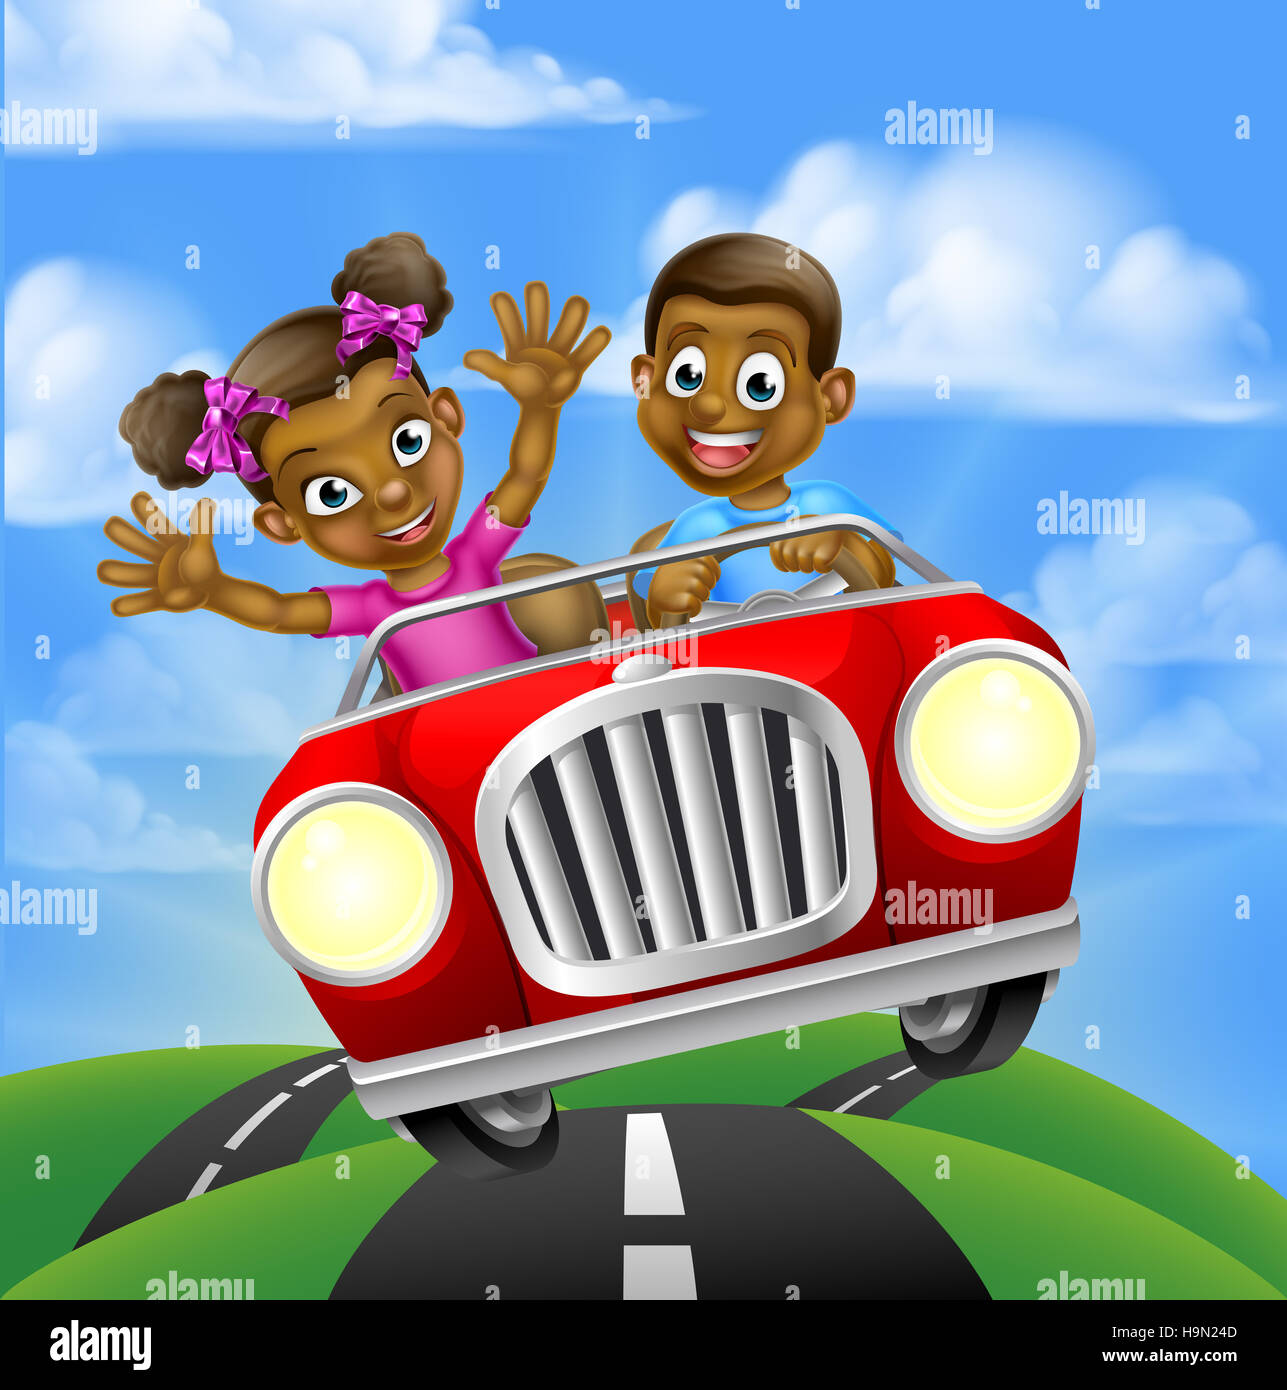 Driving A Car Cartoon Images – Browse 119,556 Stock Photos